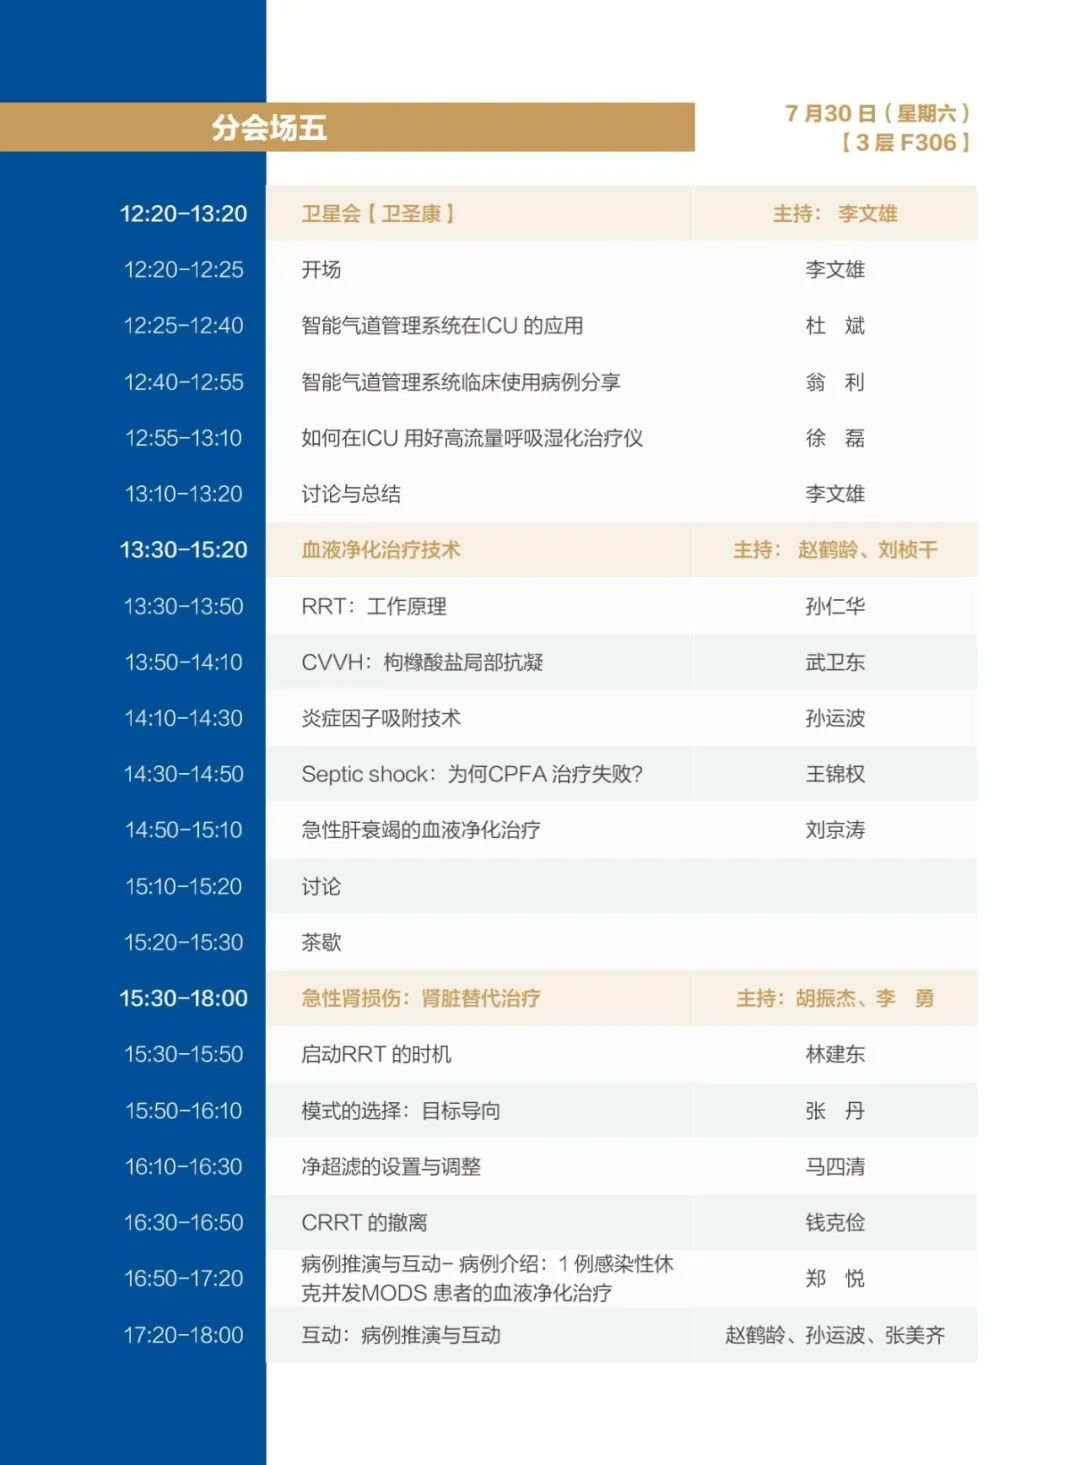 第五届中国危重病医学研究论坛&第五届中国重症治疗技术大会